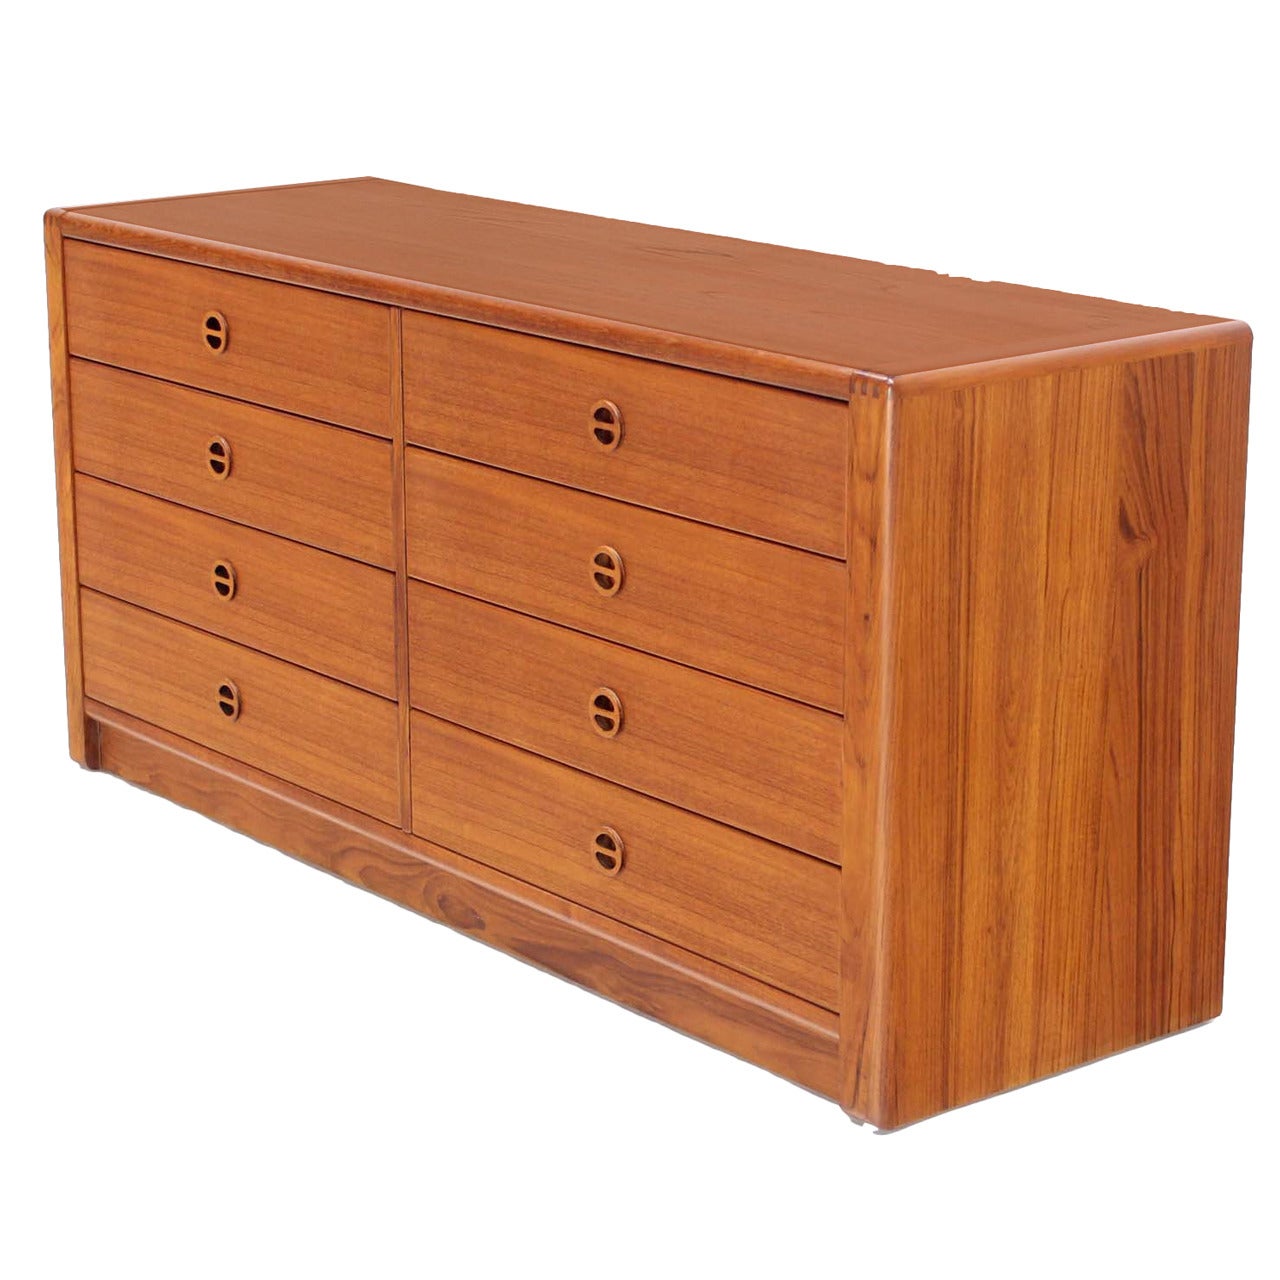 Danish Mid Century Modern Teak Eight Drawer Dresser Credenza Cabinet